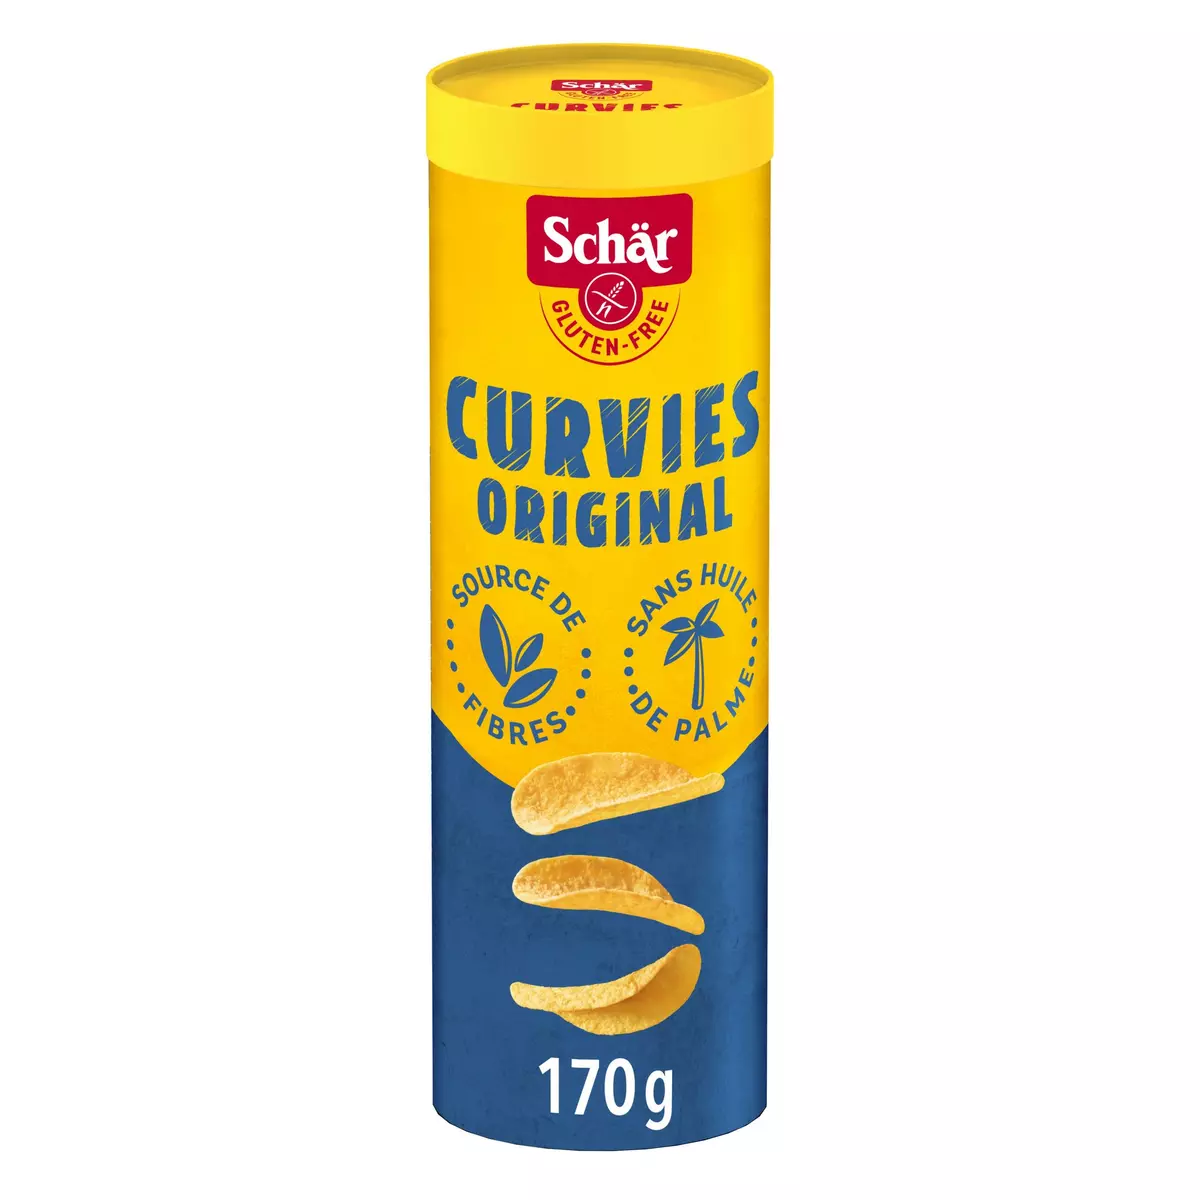 SCHAR Curvies original sans gluten 170g